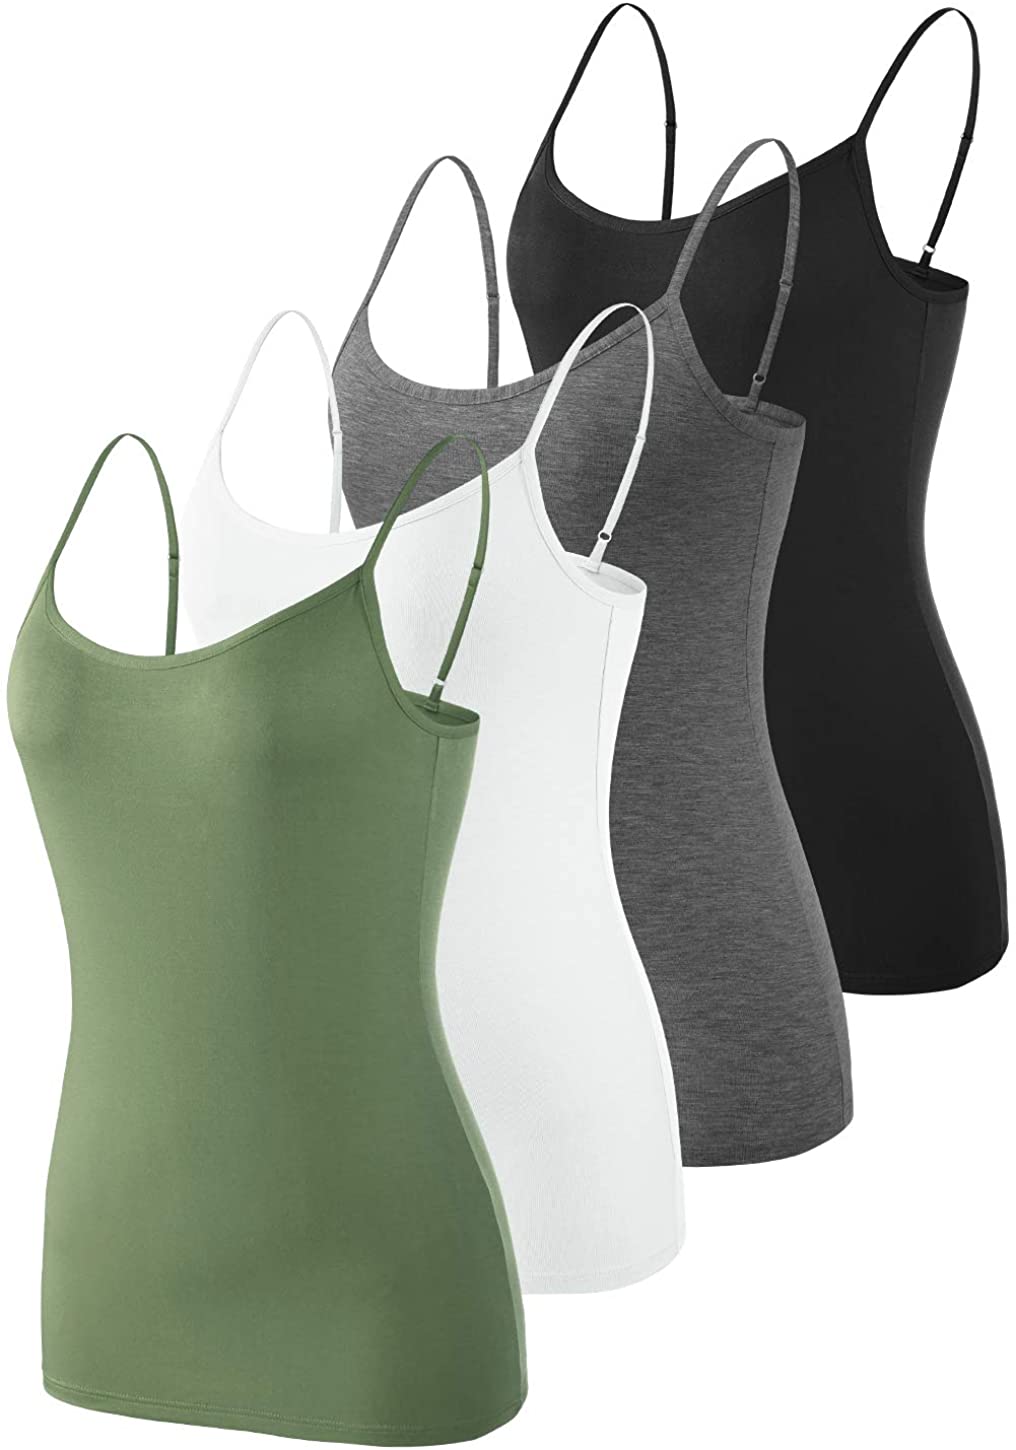 Vislivin Plain Camisole for Women Lace Tank Tops V Neck Adjustable